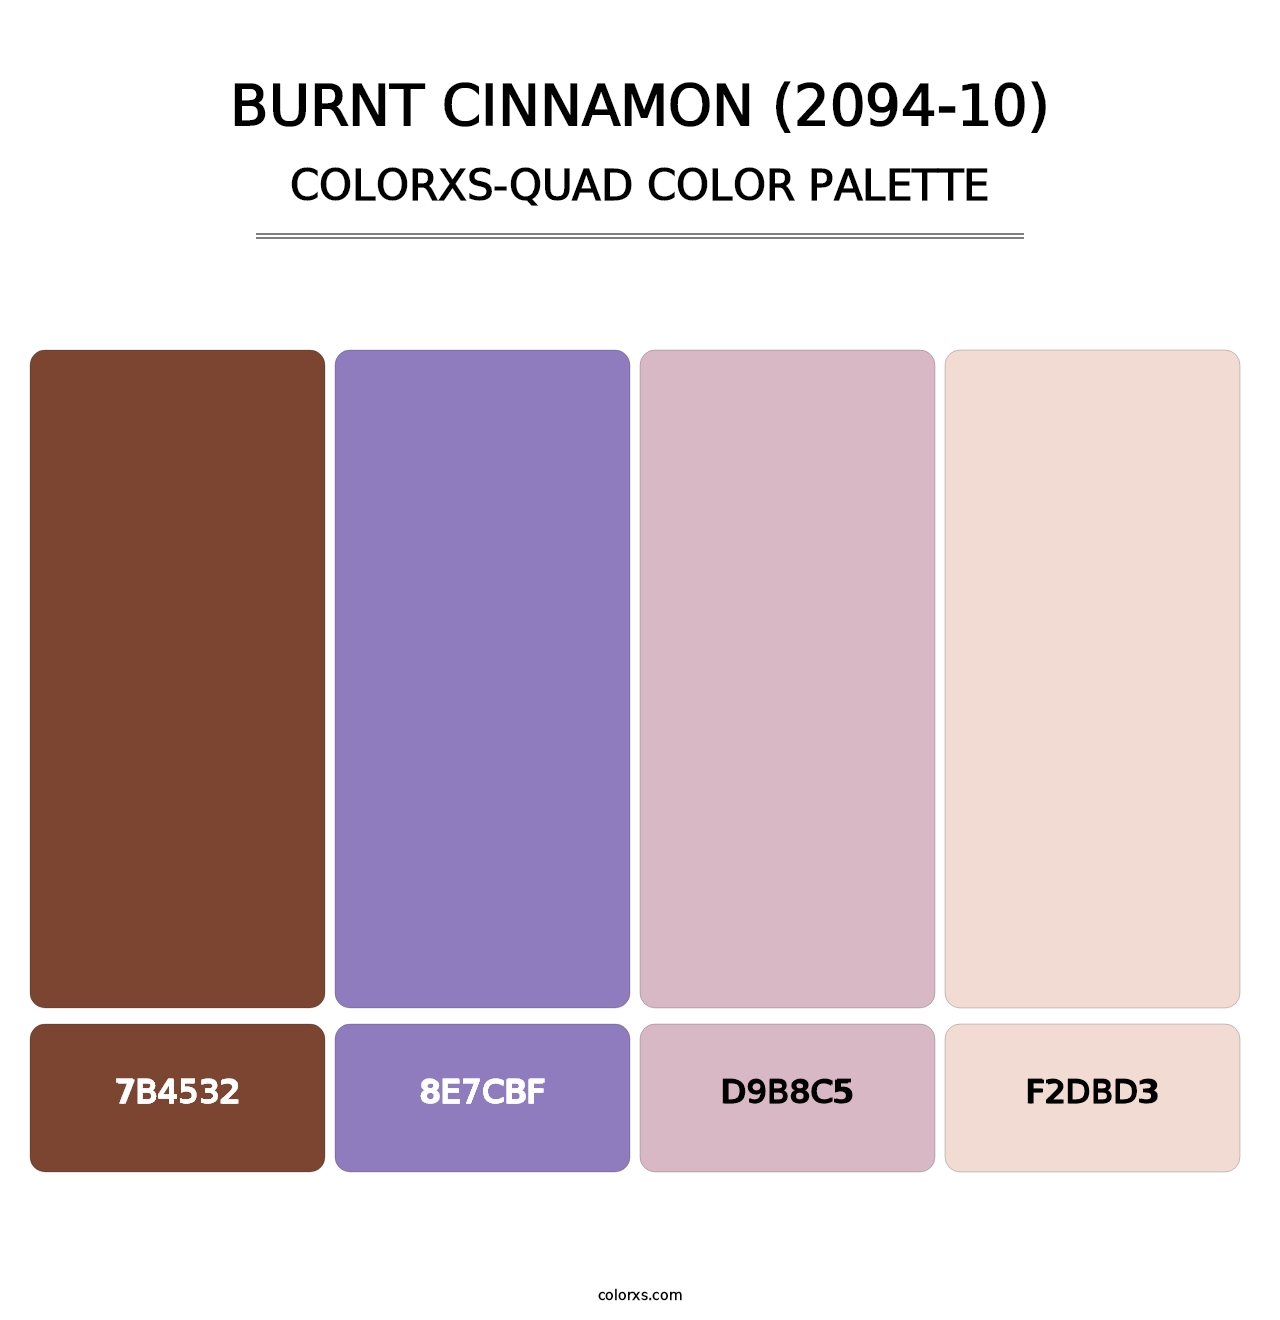 Burnt Cinnamon (2094-10) - Colorxs Quad Palette